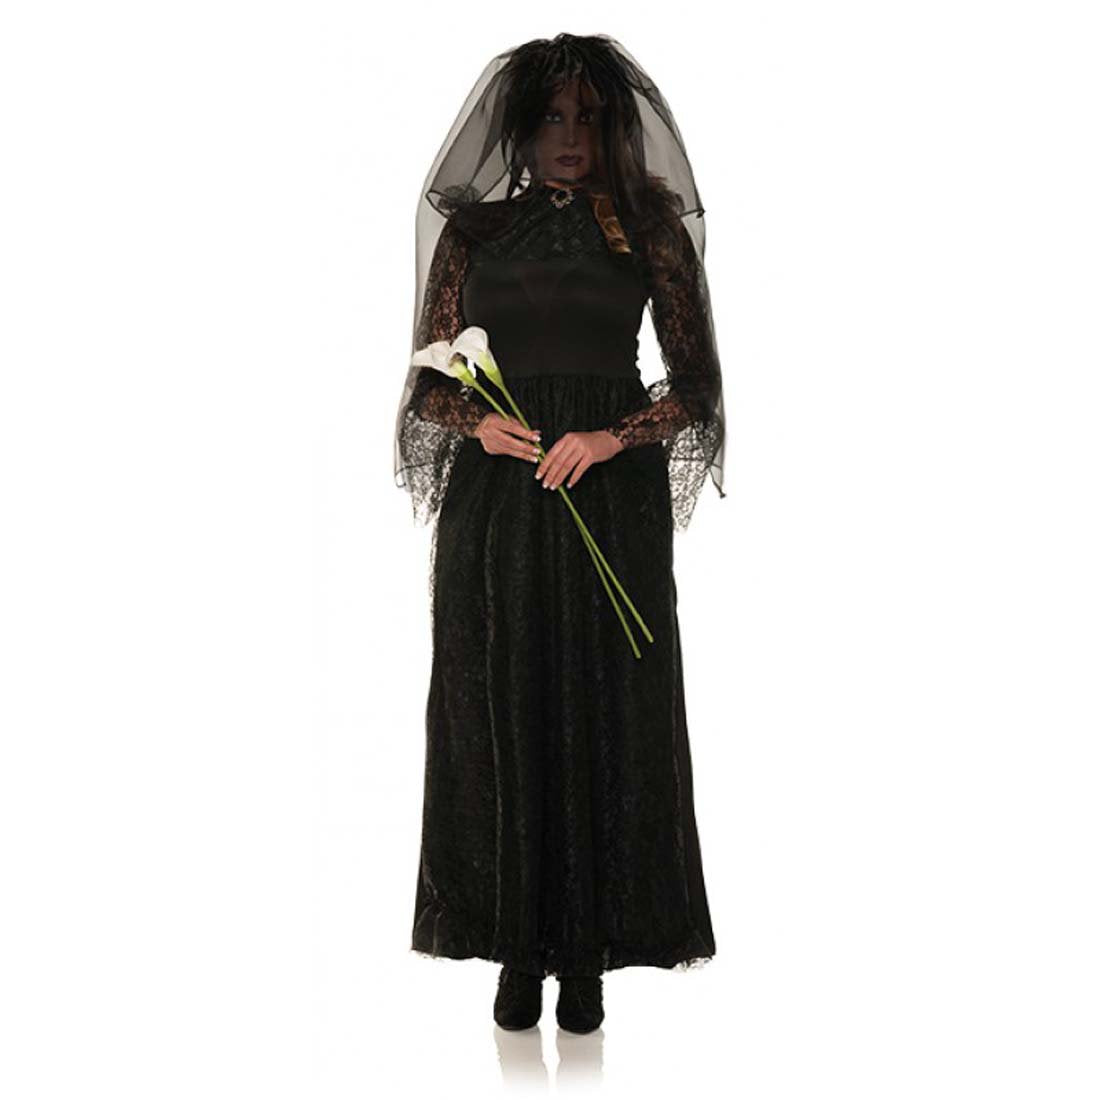 Black Dhalia Dark Bride Costume - Adult